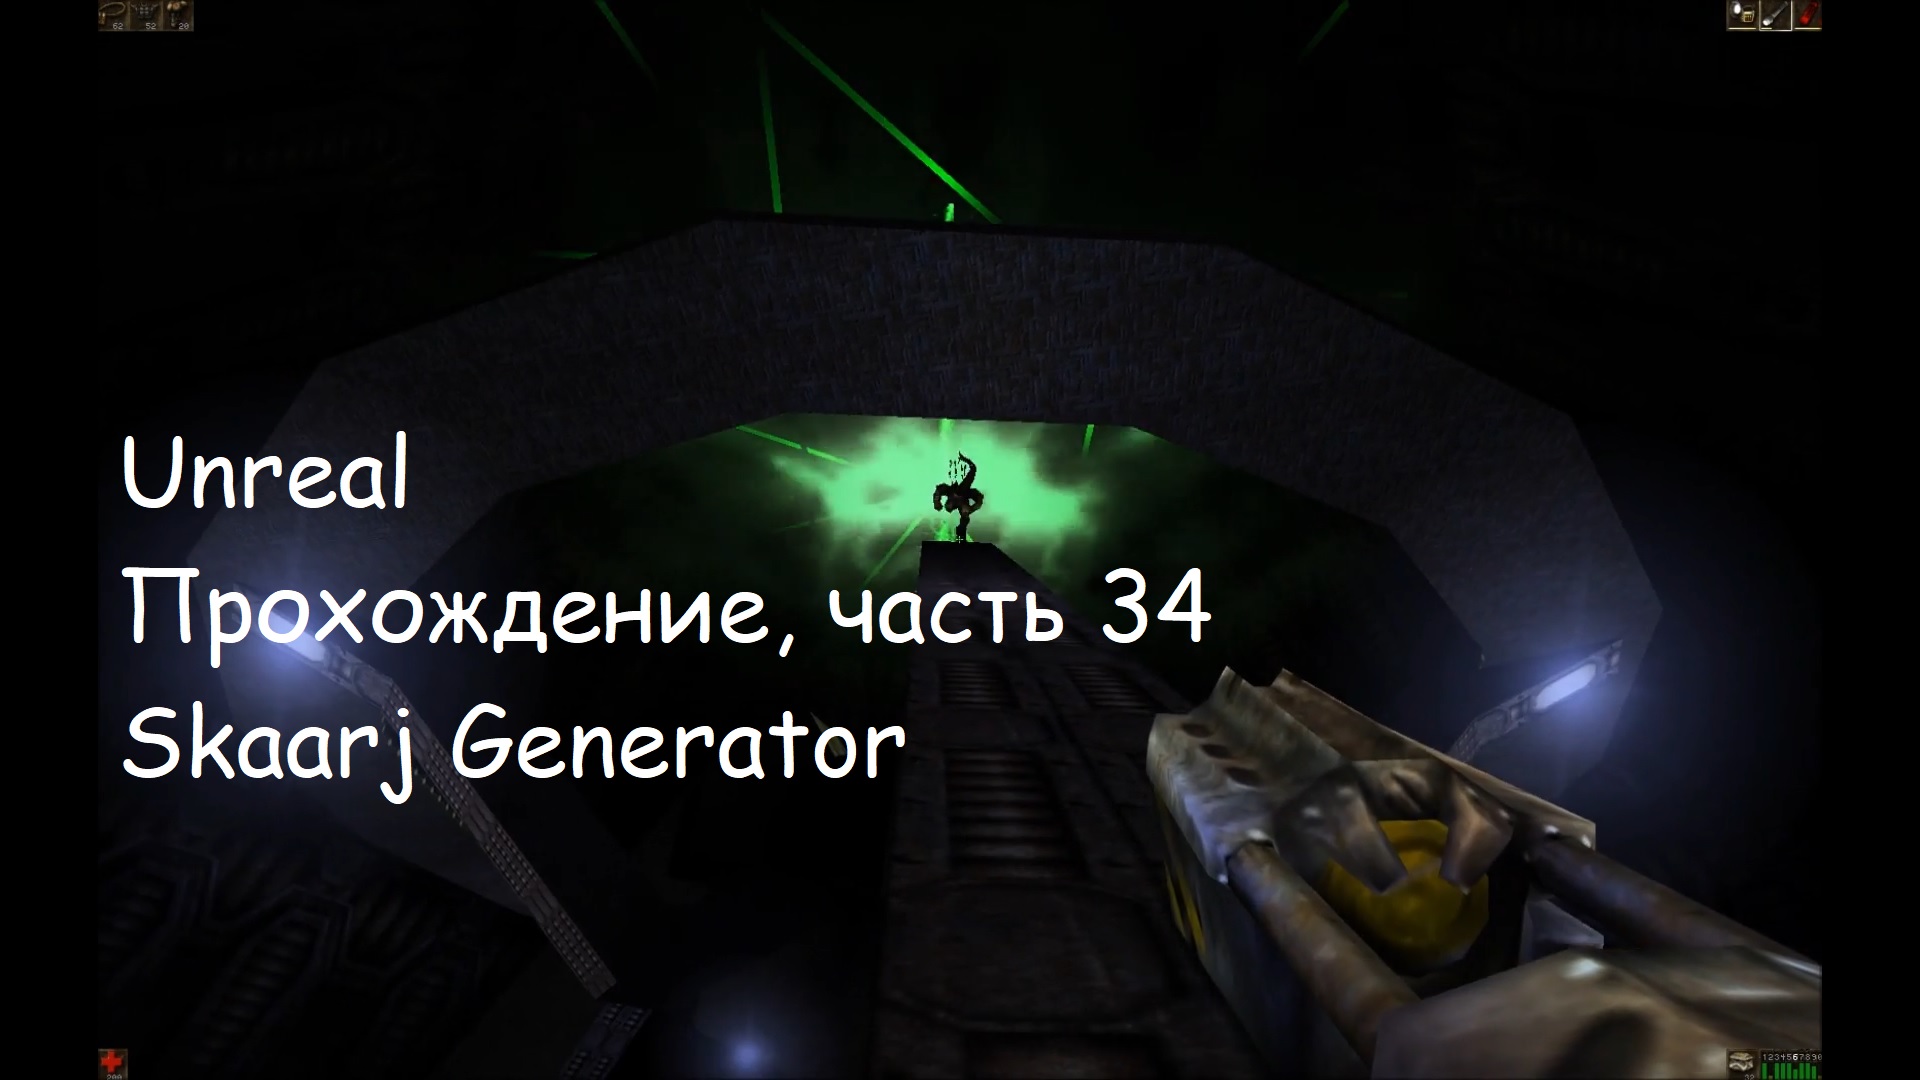 Unreal, Прохождение, часть 34 - Skaarj Generator